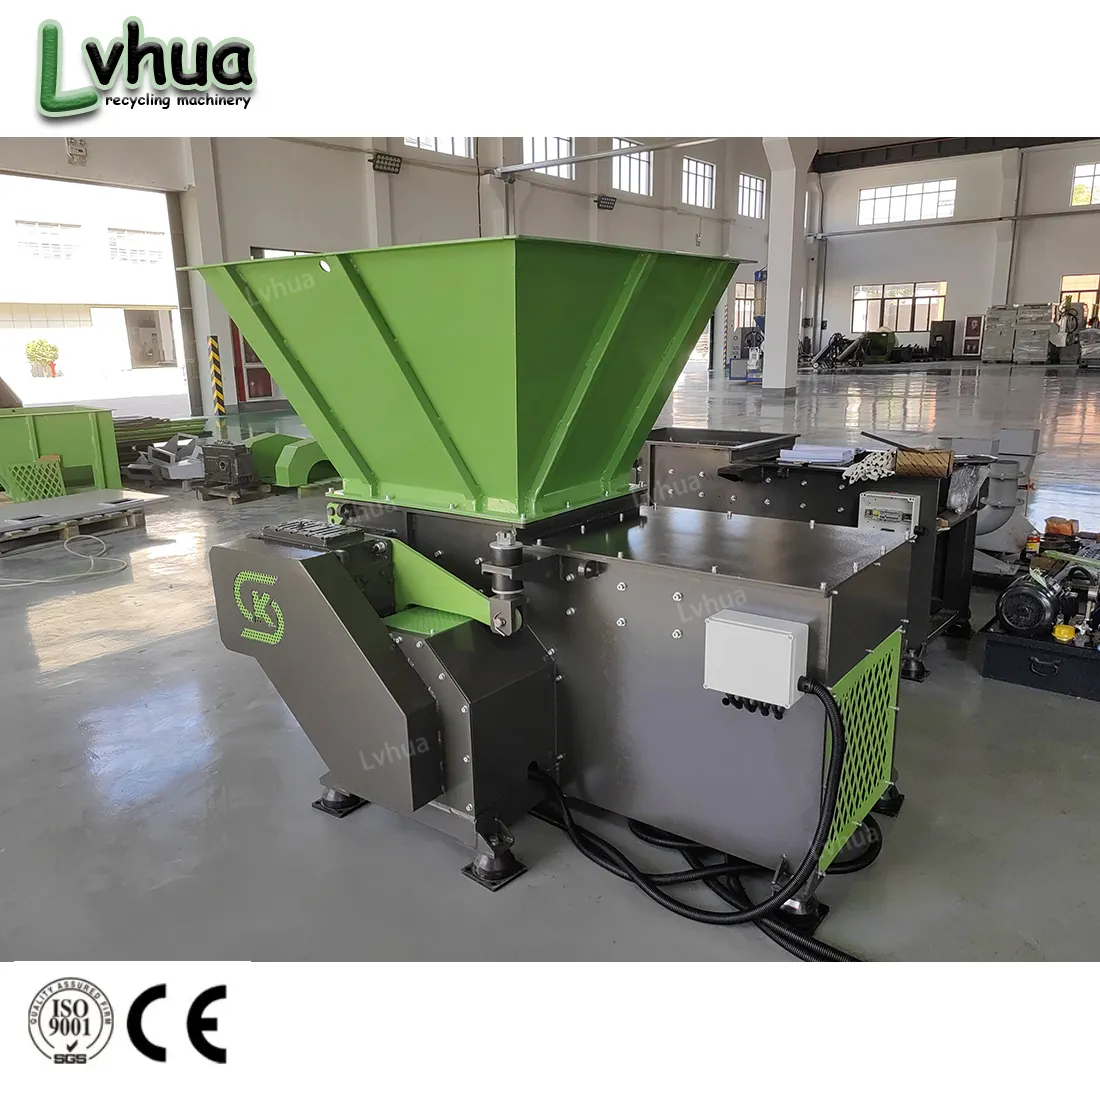 Lvhua – Machine de recyclage de pneus de déchets entièrement automatique, broyeur de pneus/broyeur de pneus, broyeur de déchets en plastique Double Sh